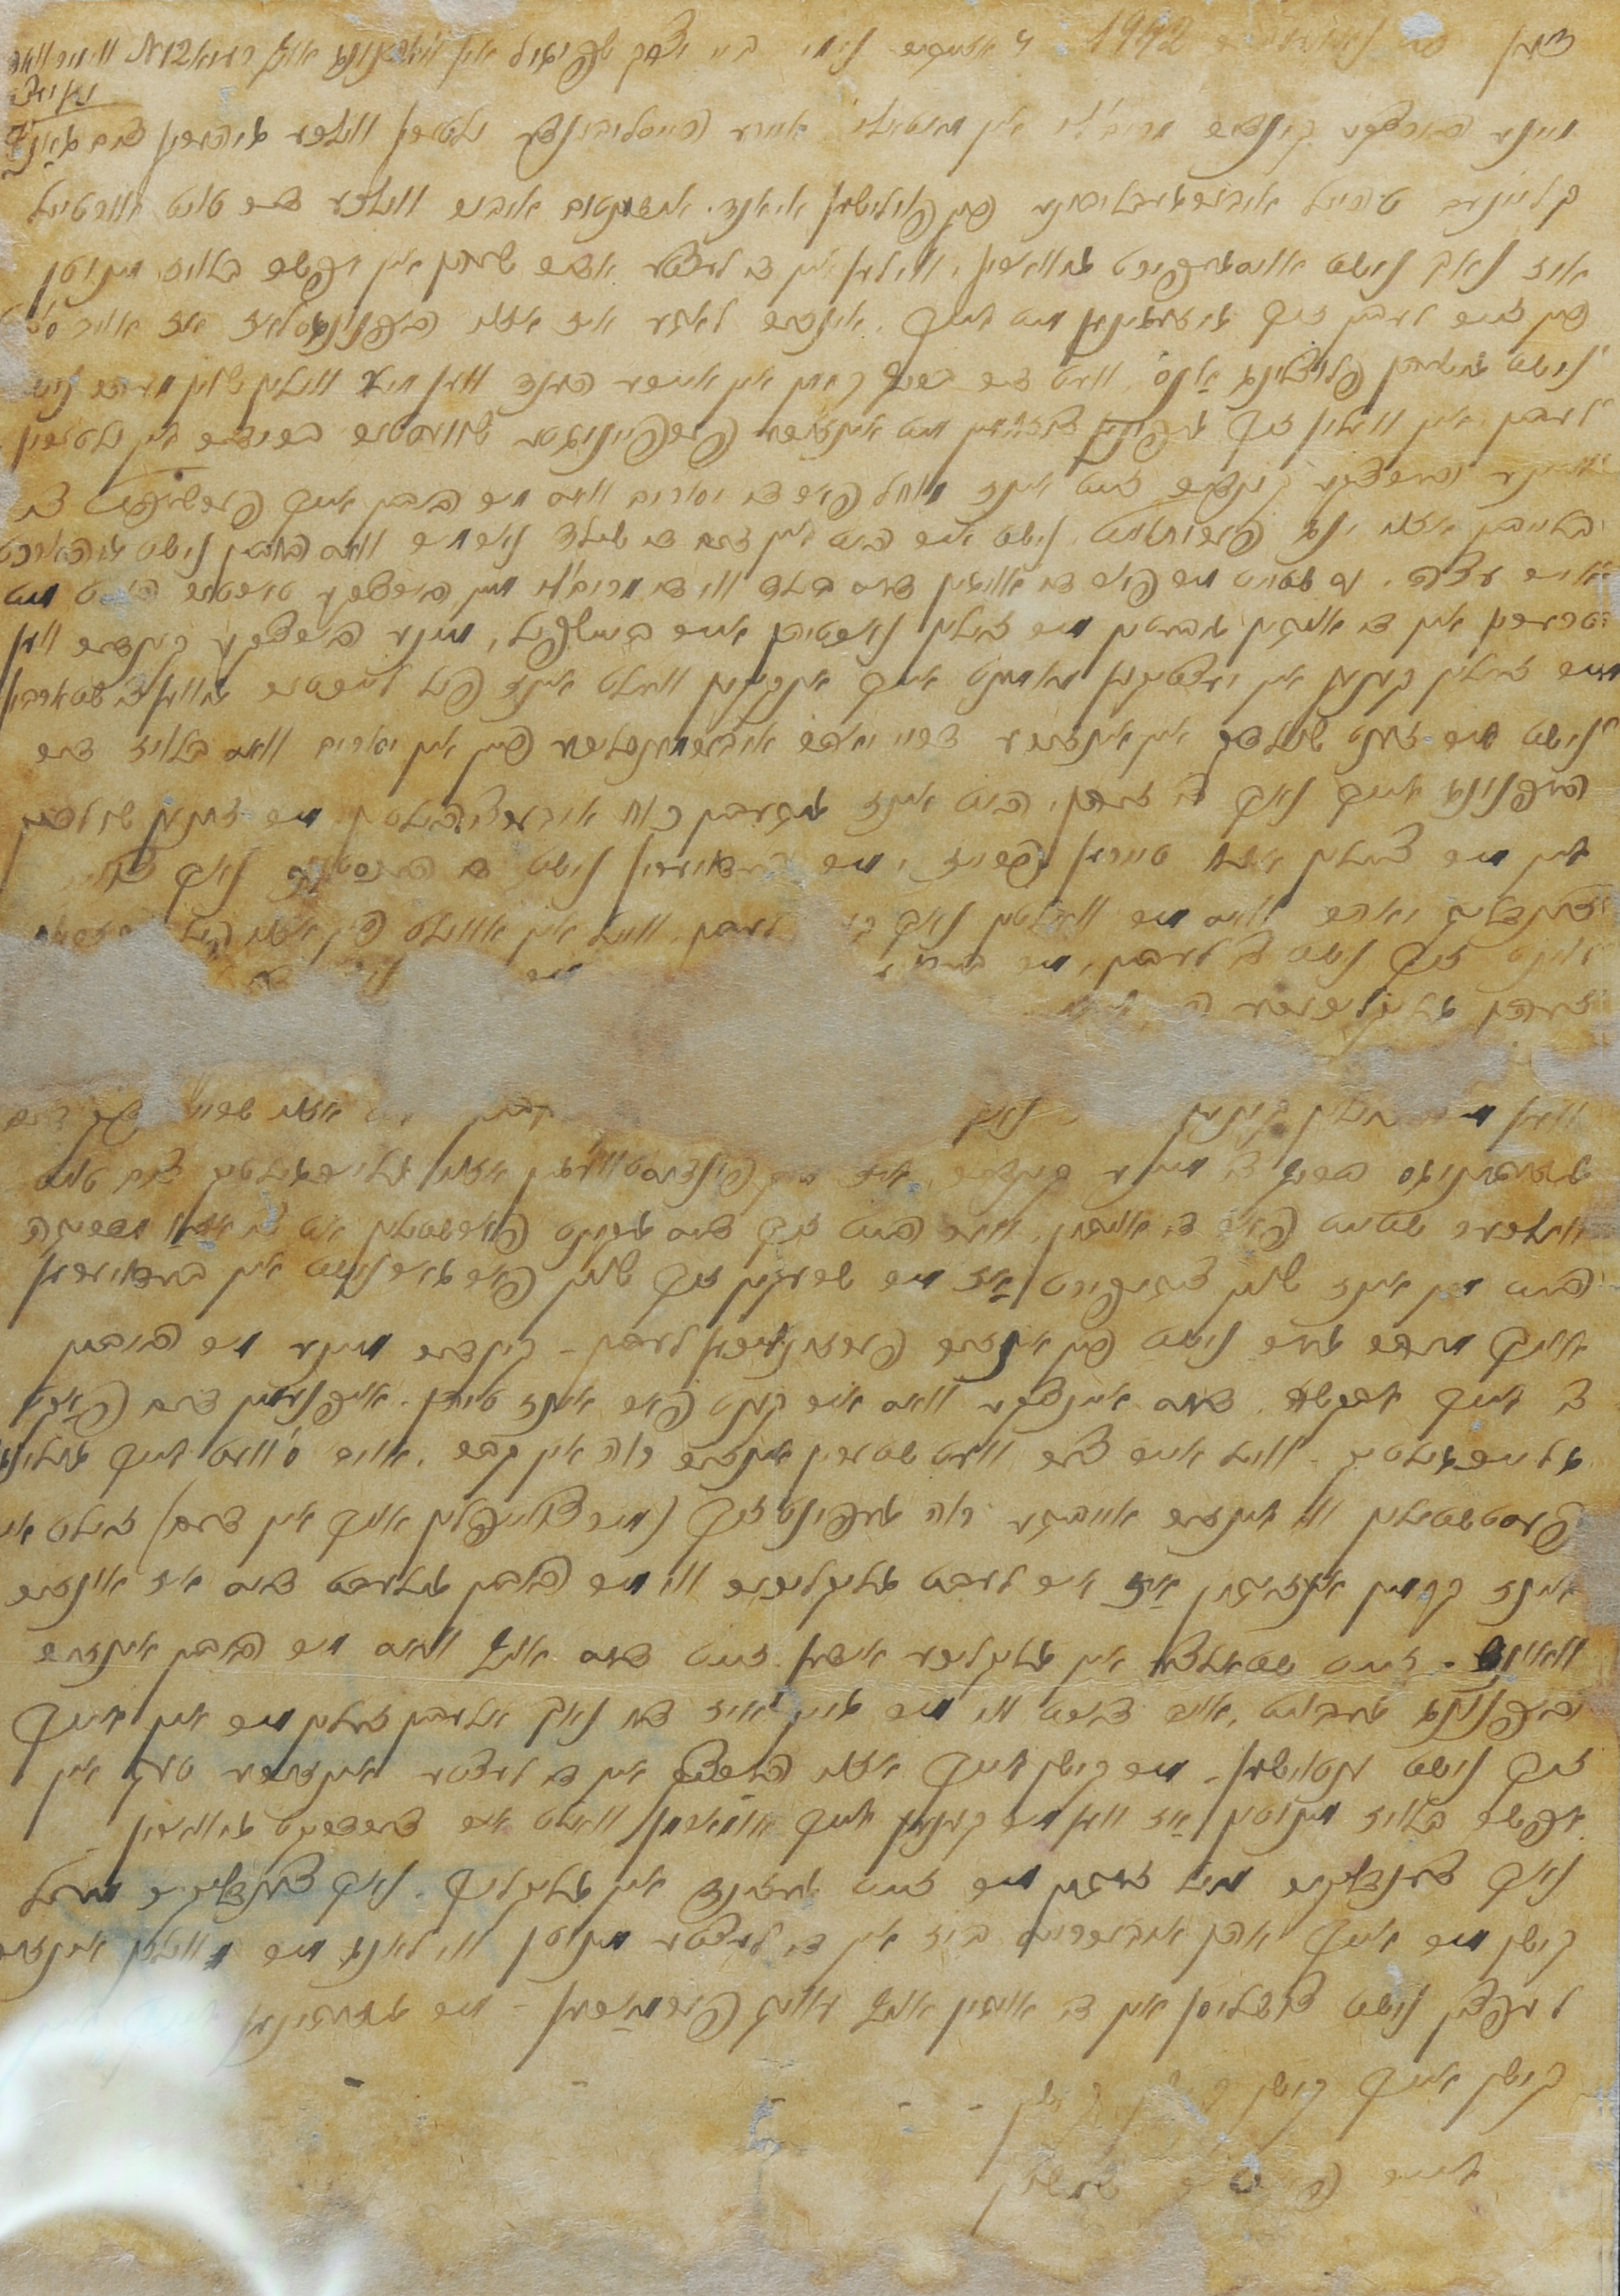 המכתב האחרון של שמשון הולצבלט אותו כתב בגטו ריובייץ אל ילדיו, מרים ומרדכי